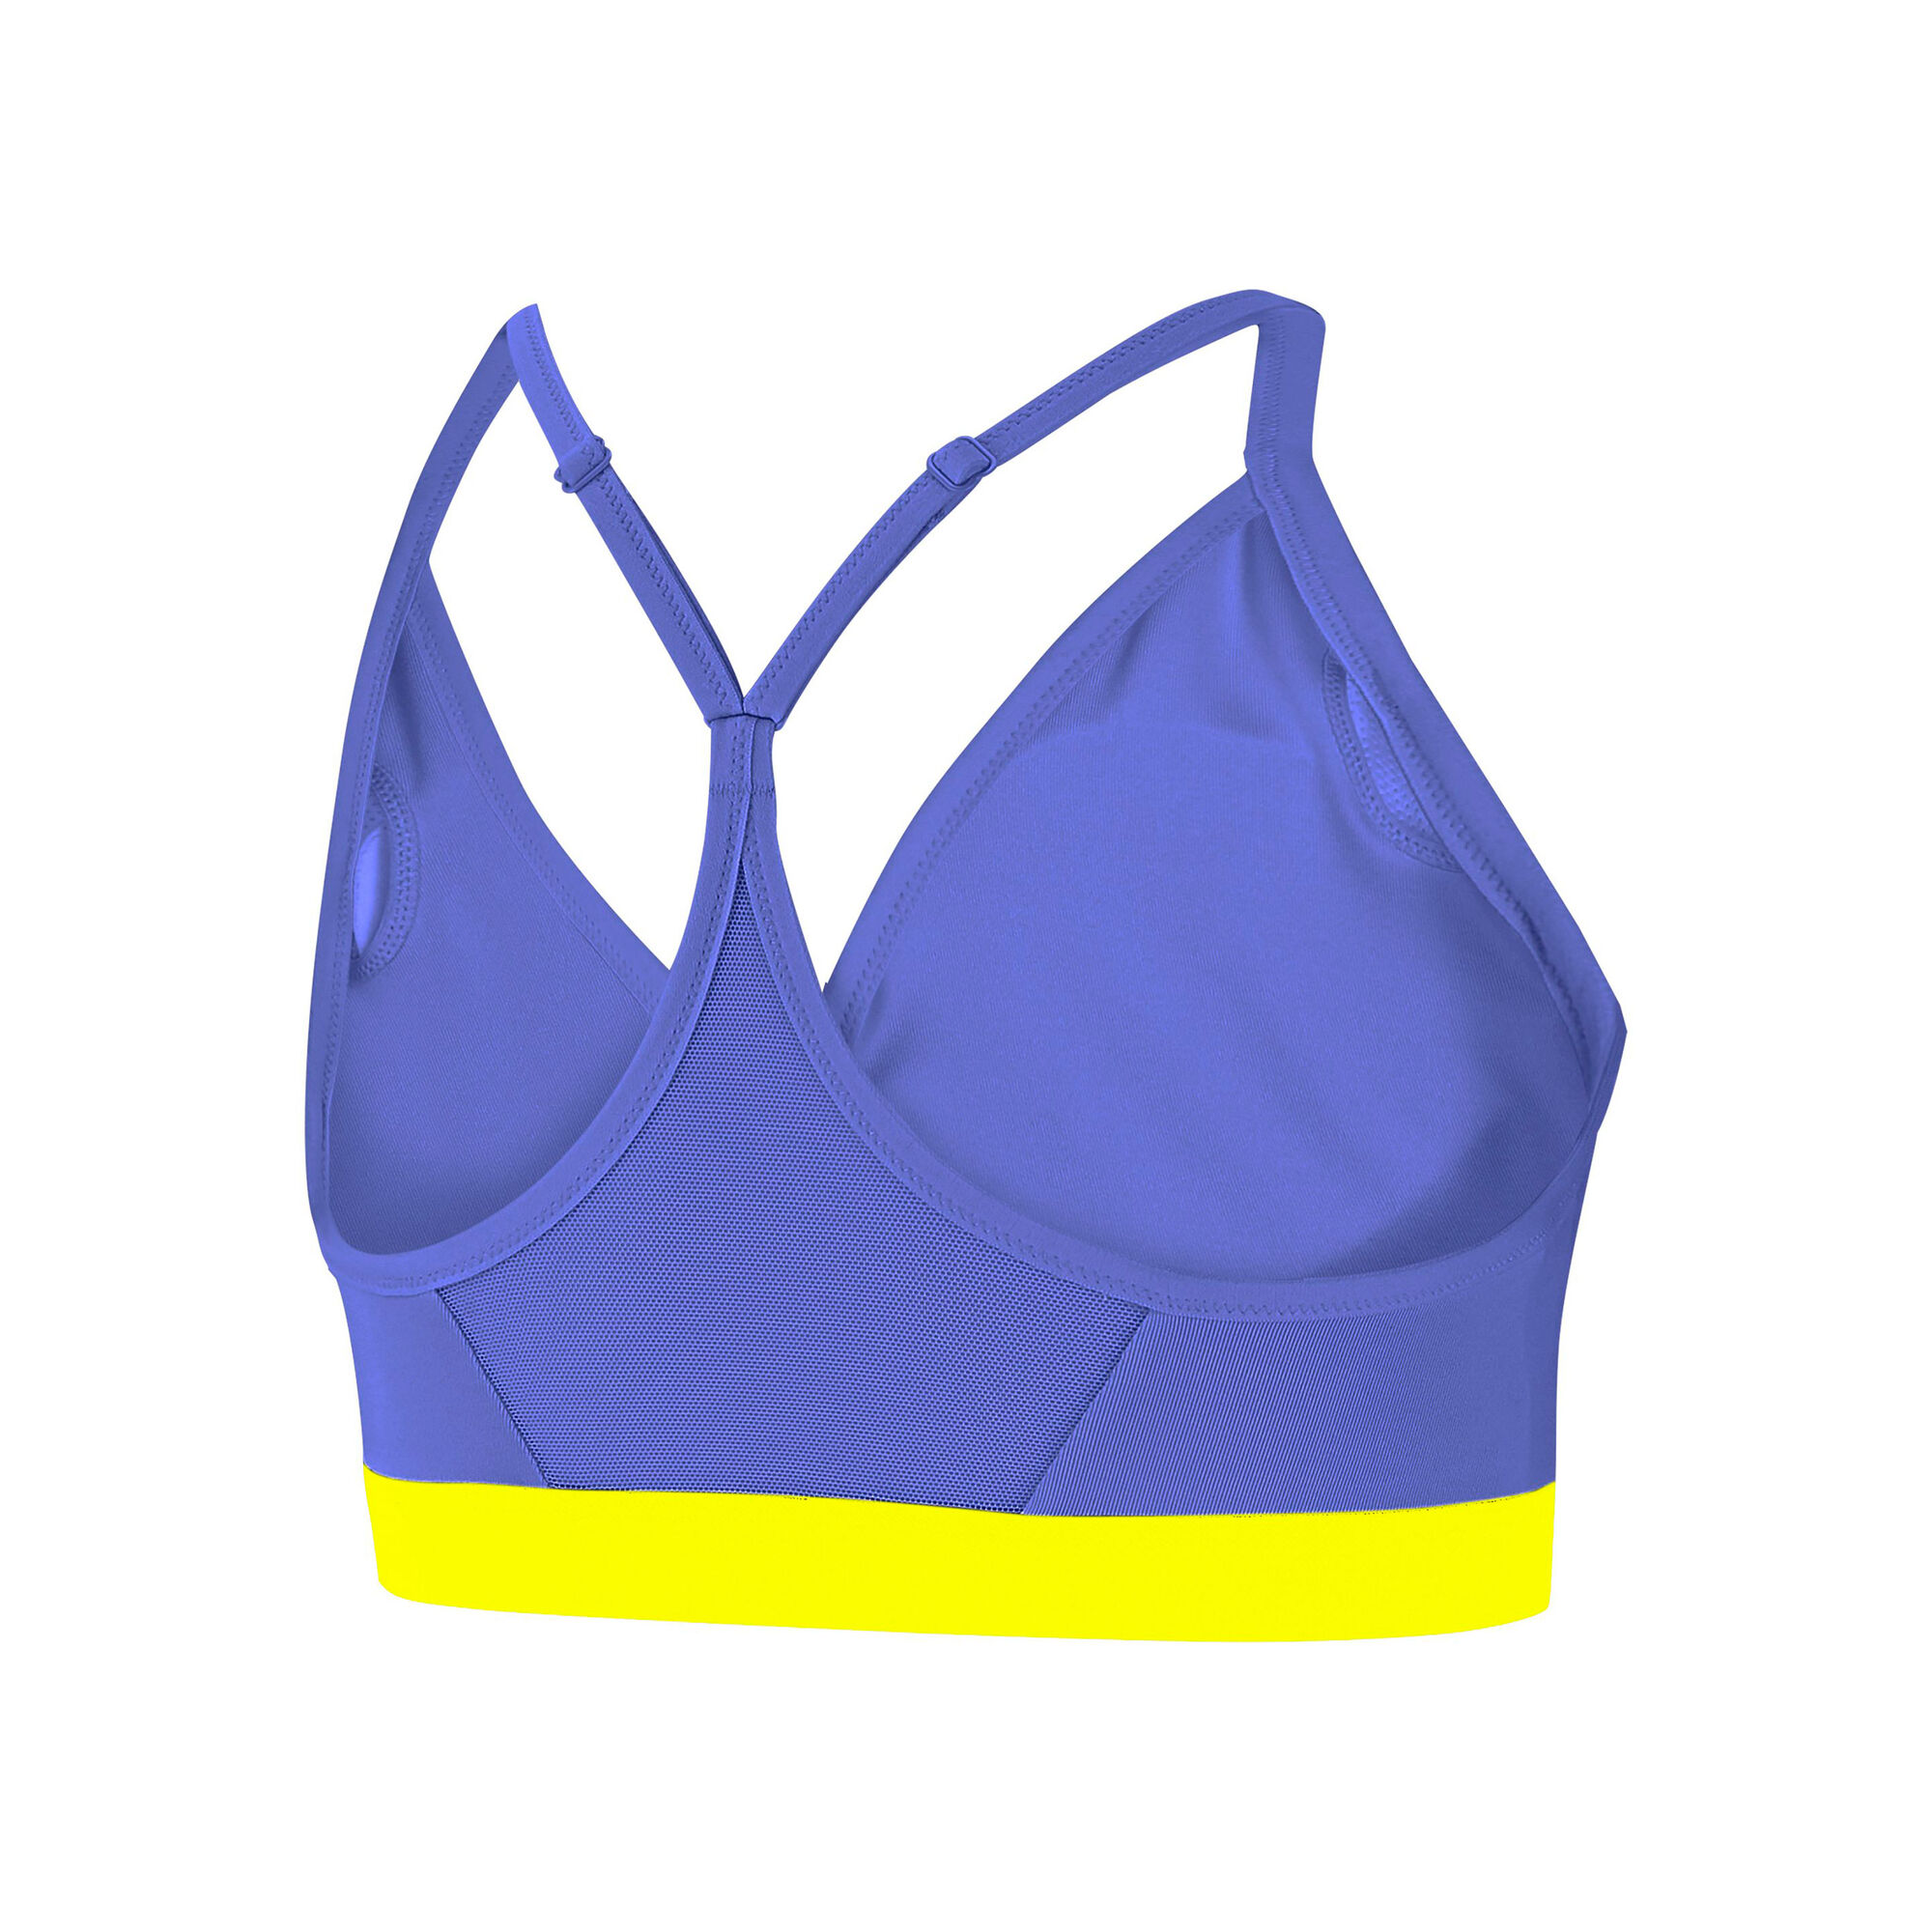 Buy Nike Indy Sports Bras Women Blue, Yellow online